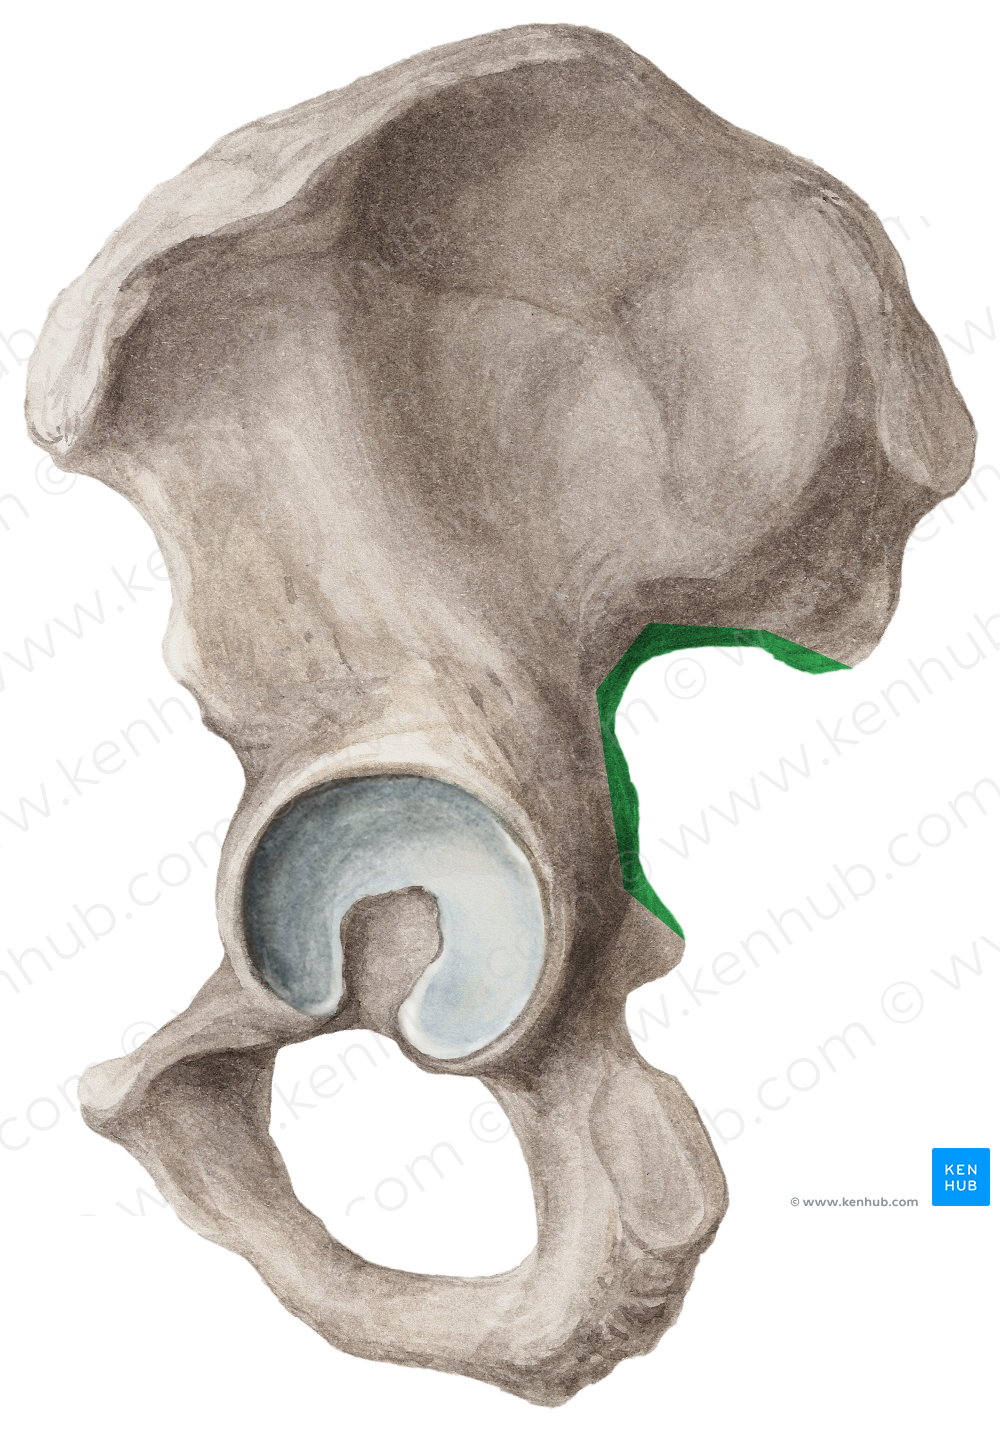 Greater sciatic notch of hip bone (#4292)